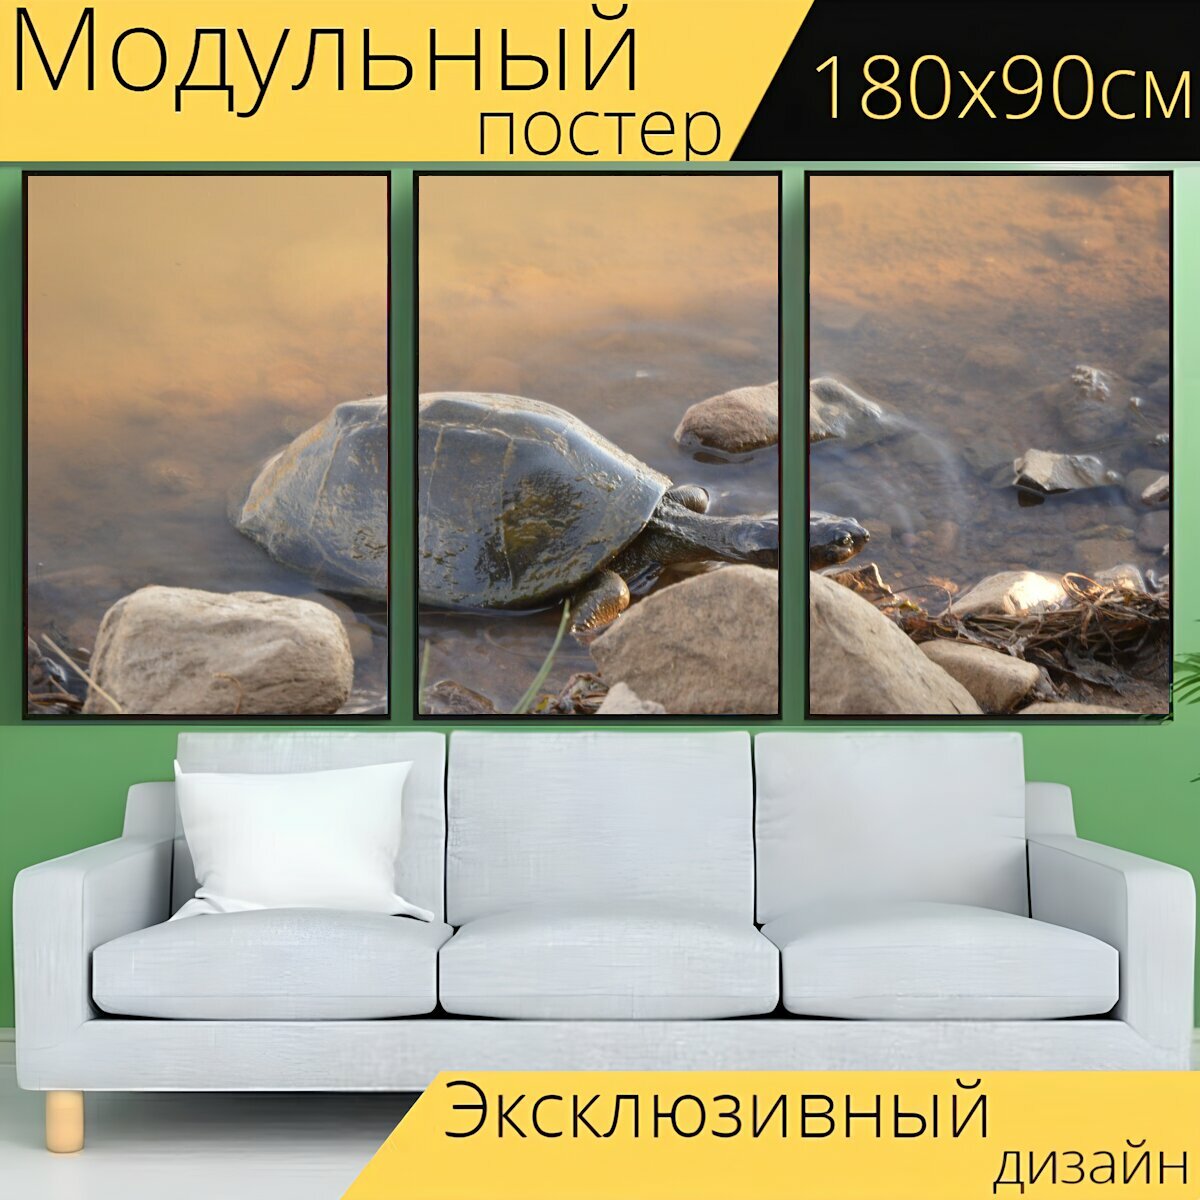 Модульный постер "Черепаха, дикие, природа" 180 x 90 см. для интерьера